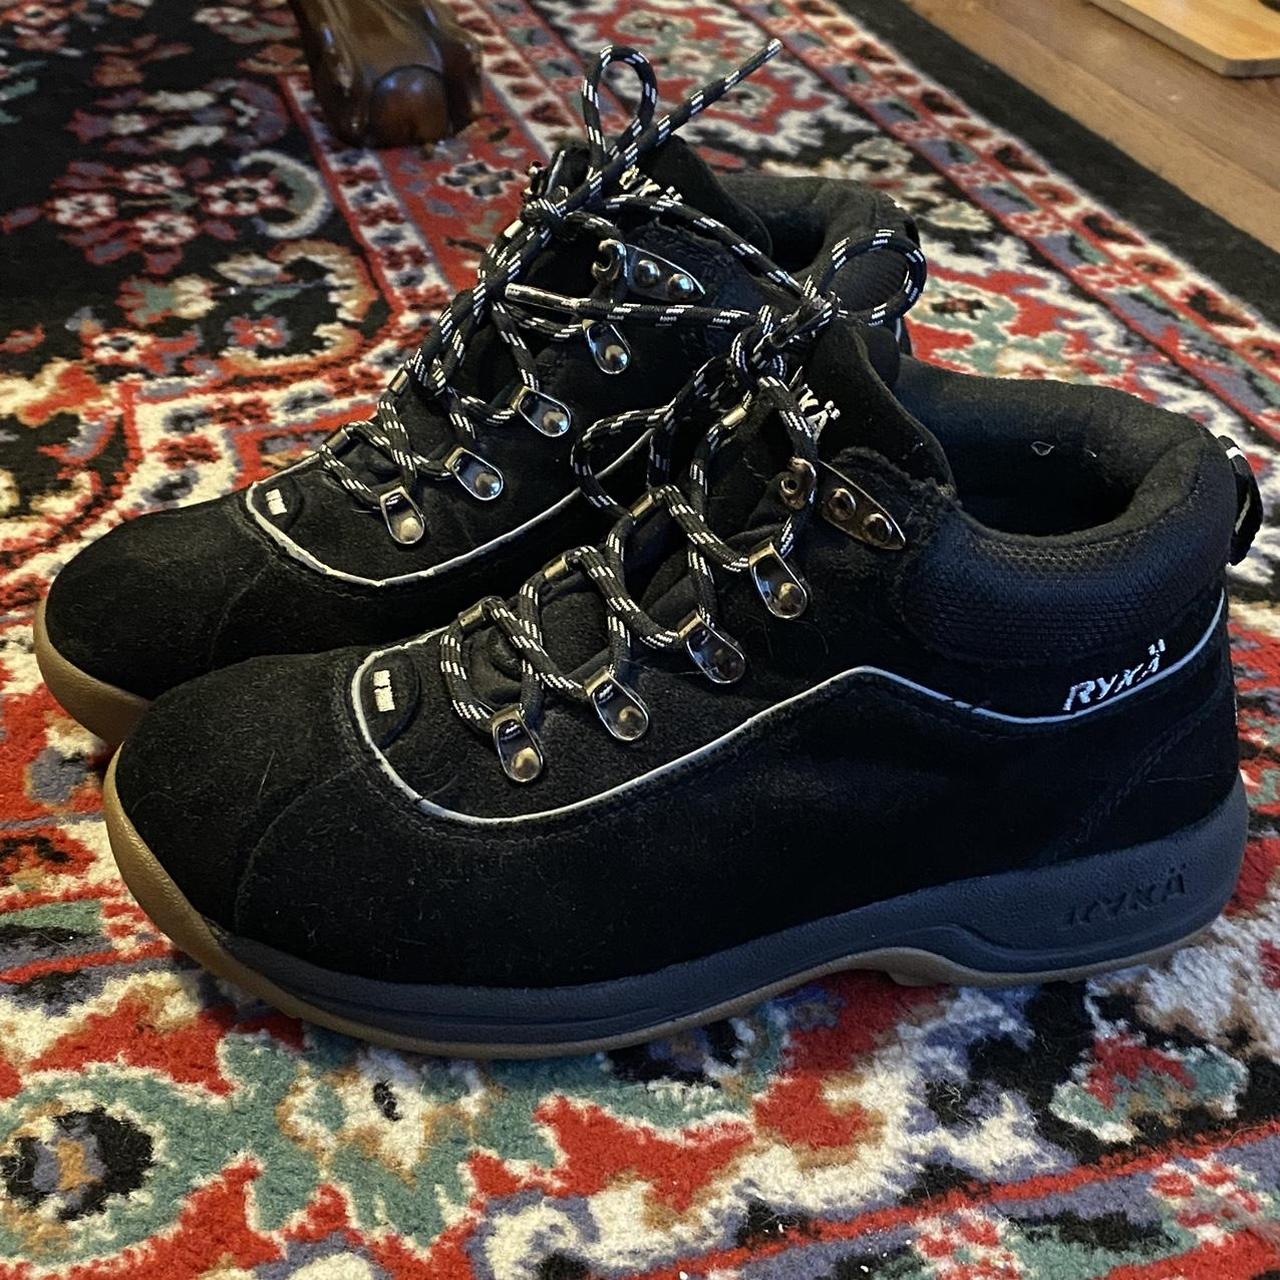 black vintage hiking ankle boot shoes 🖤 size 8... - Depop